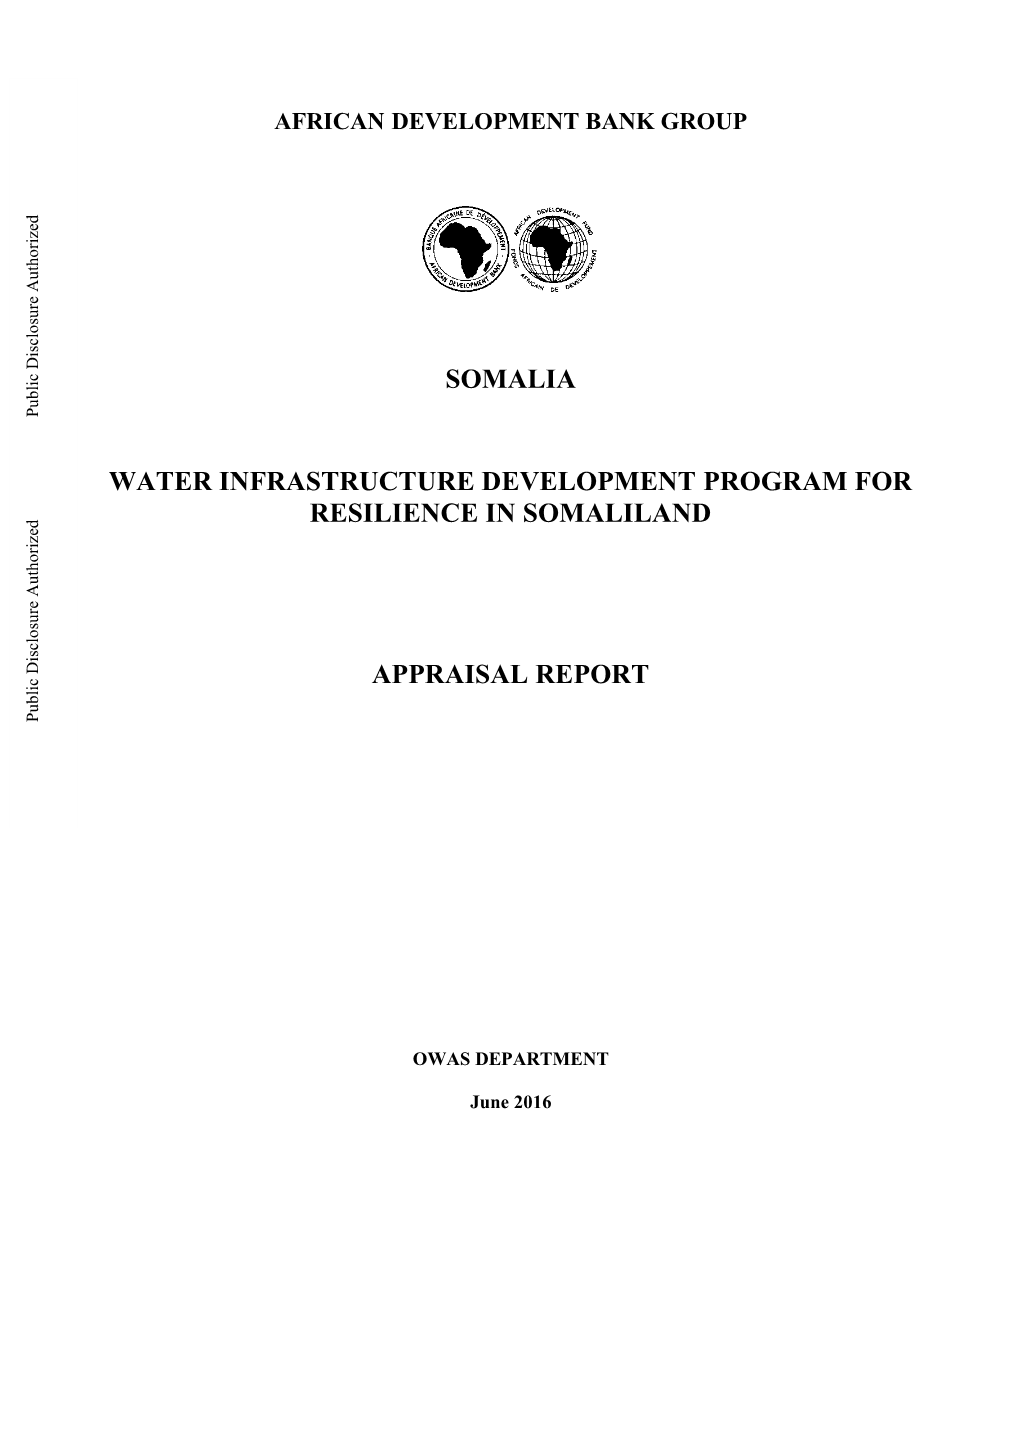 Somalia Water Infrastructure Development Program for Resilience